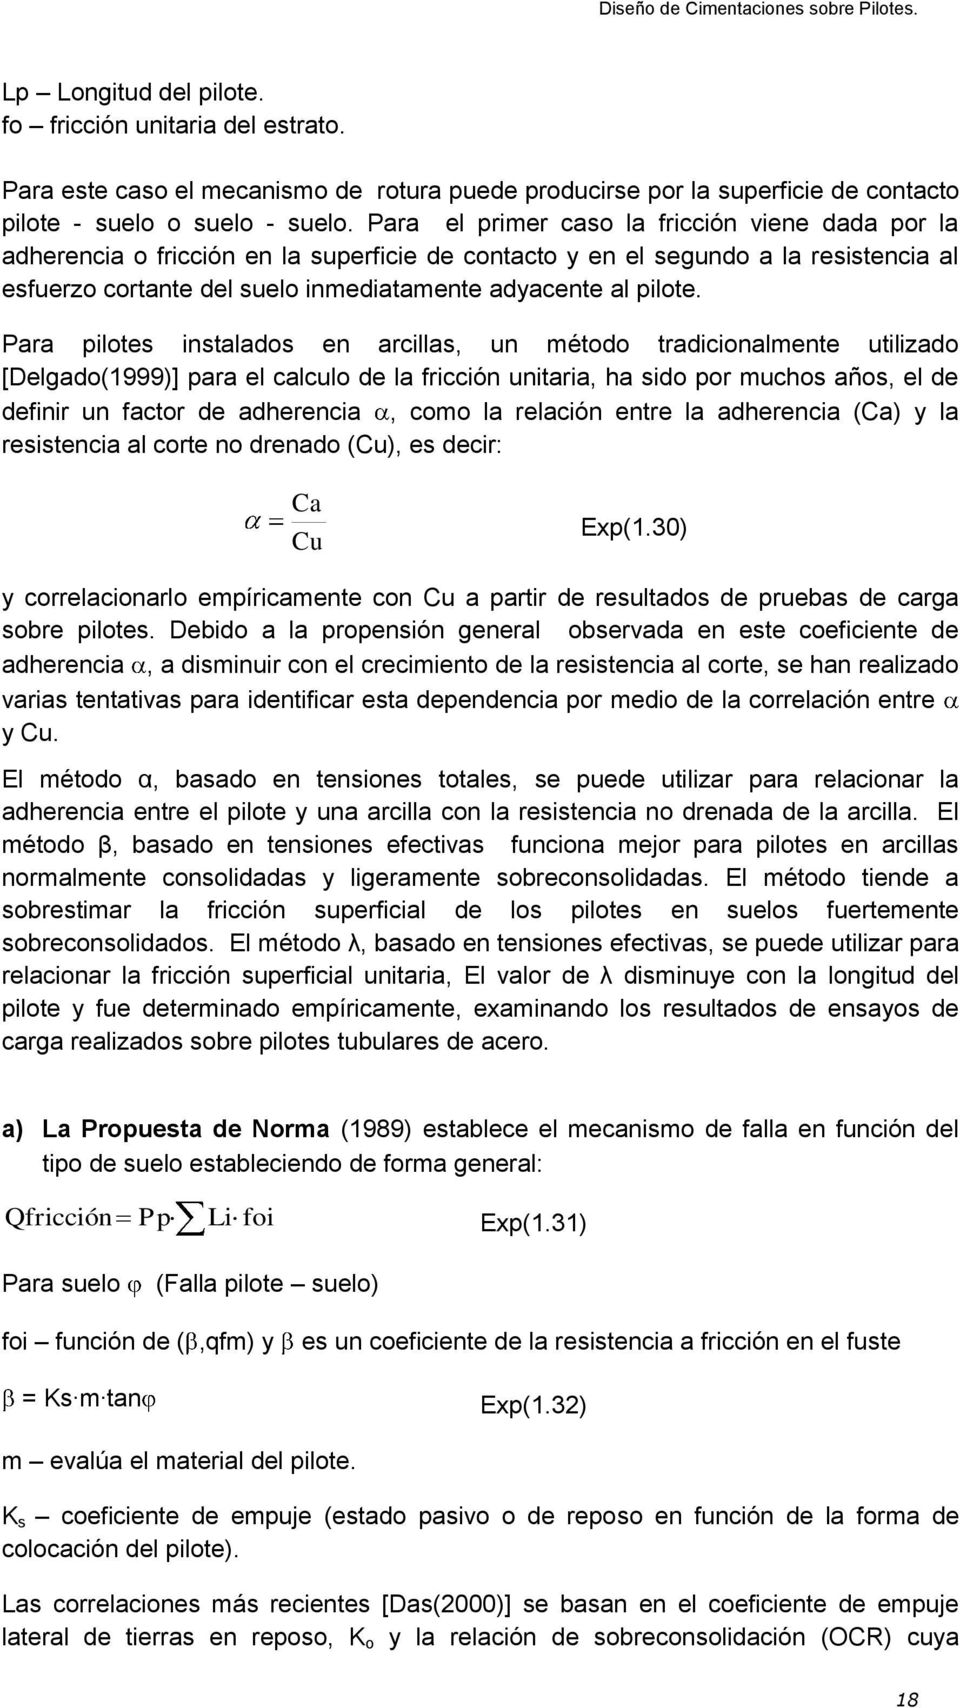 Para pilotes instalados en arcillas, un método tradicionalmente utilizado [Delgado(1999)] para el calculo de la fricción unitaria, ha sido por muchos años, el de definir un factor de adherencia, como